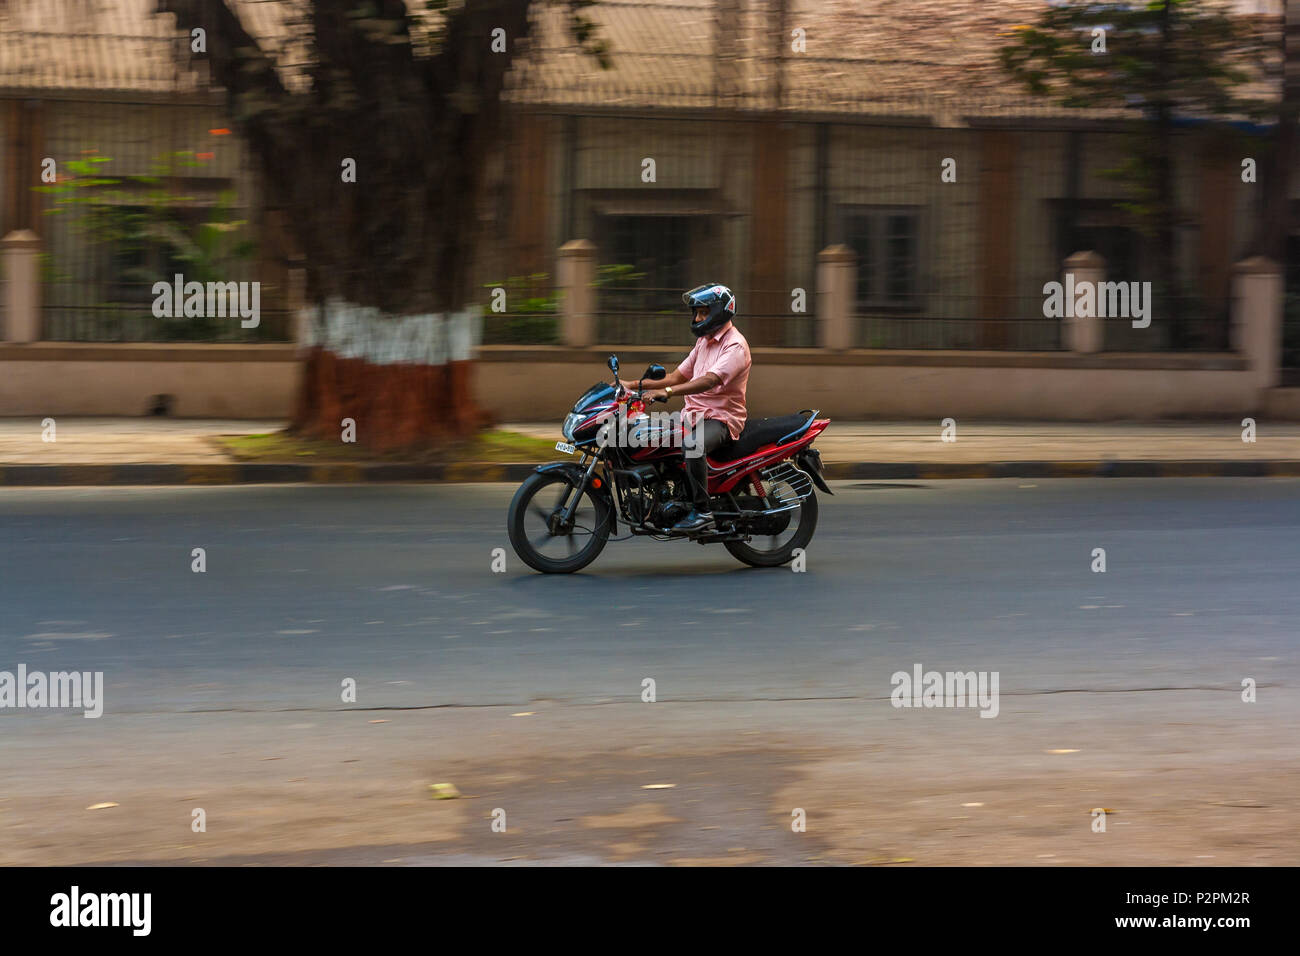 MUMBAI, INDIA - DECEMBER 04, 2016 : A man riding a motor bike on streets of Mumbai Stock Photo